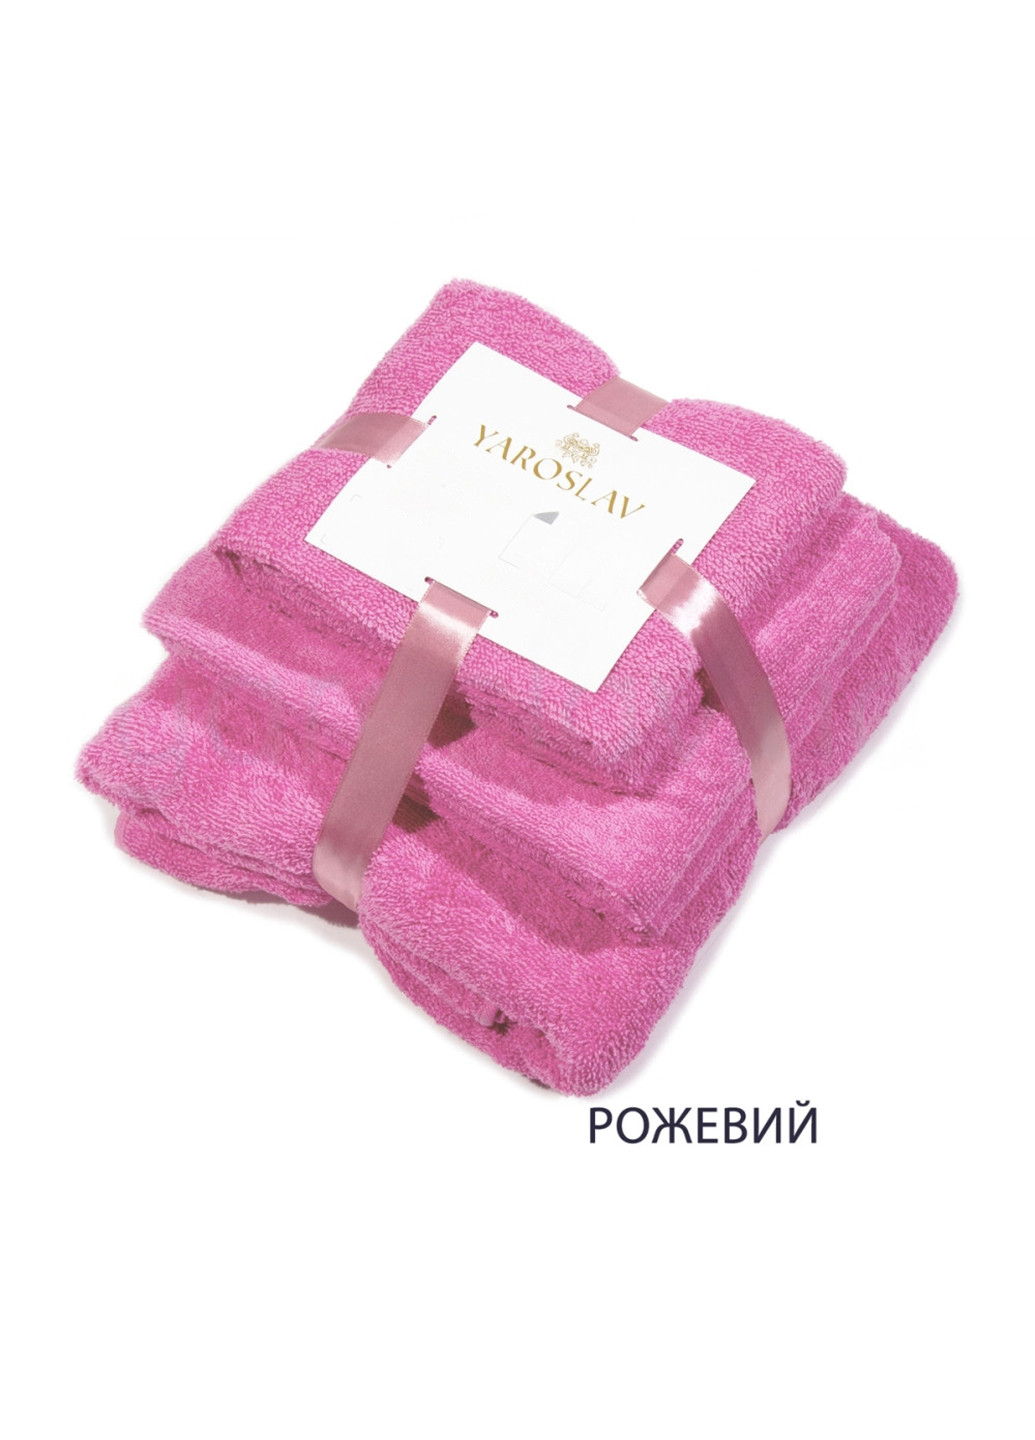 Ярослав набор полотенец яр-400 3 шт. однотонный розовый производство - Украина